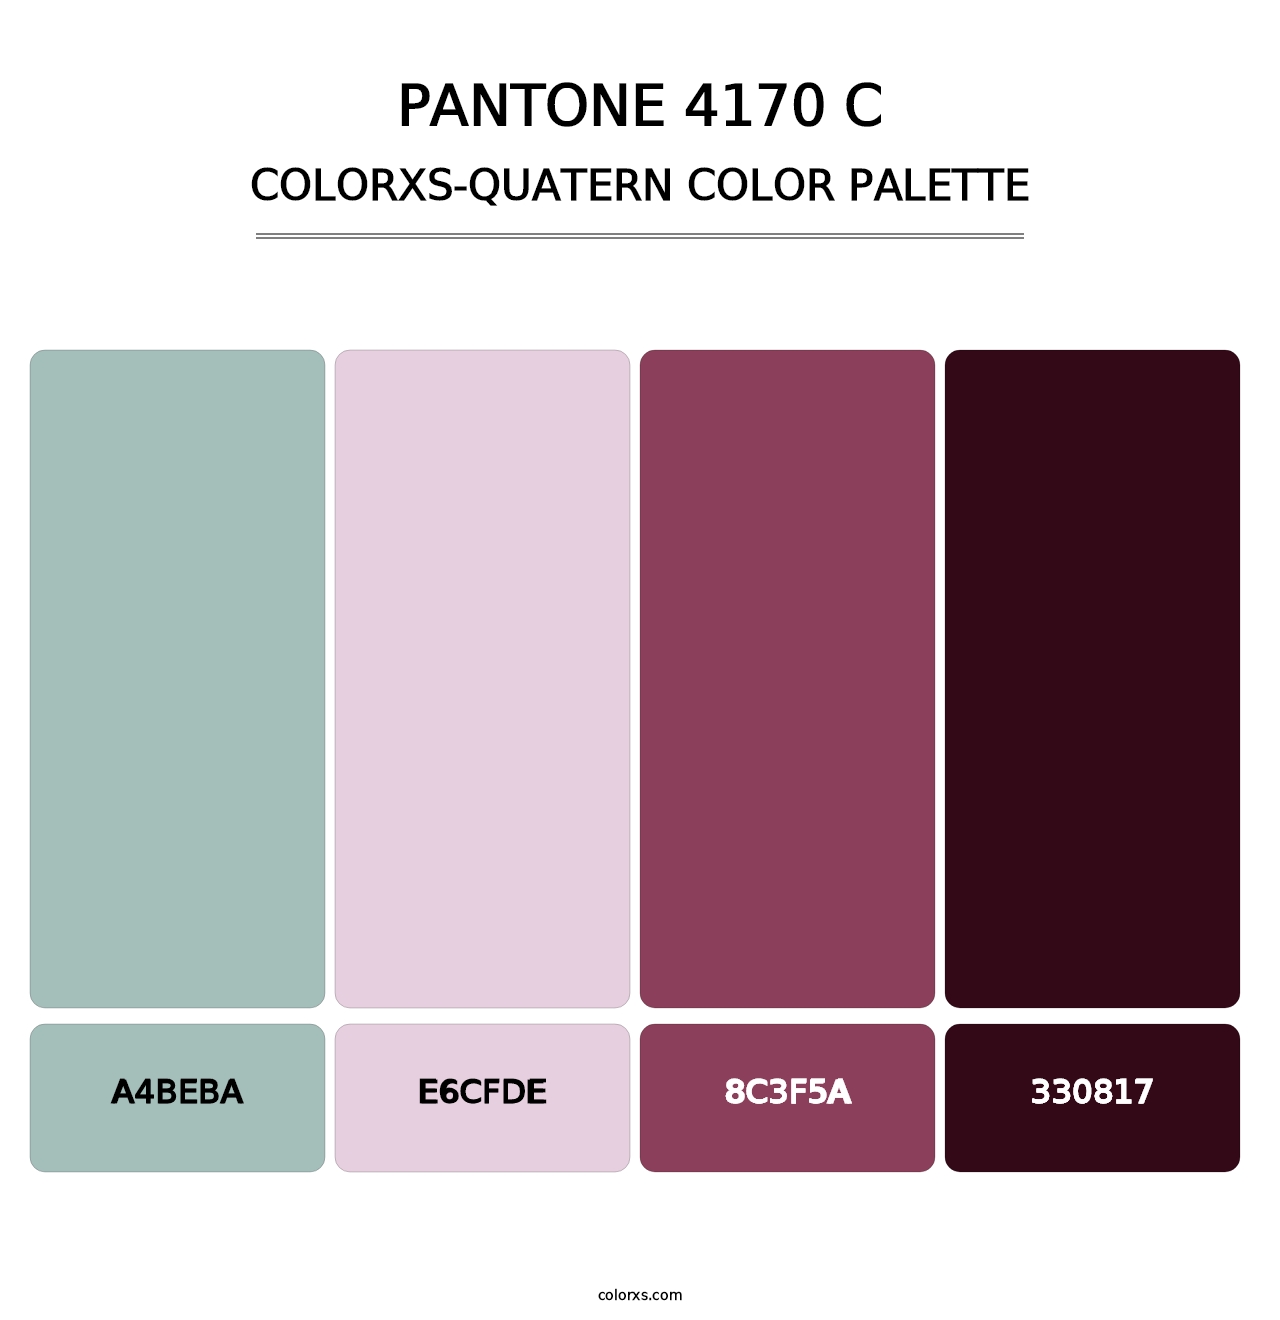 PANTONE 4170 C - Colorxs Quatern Palette